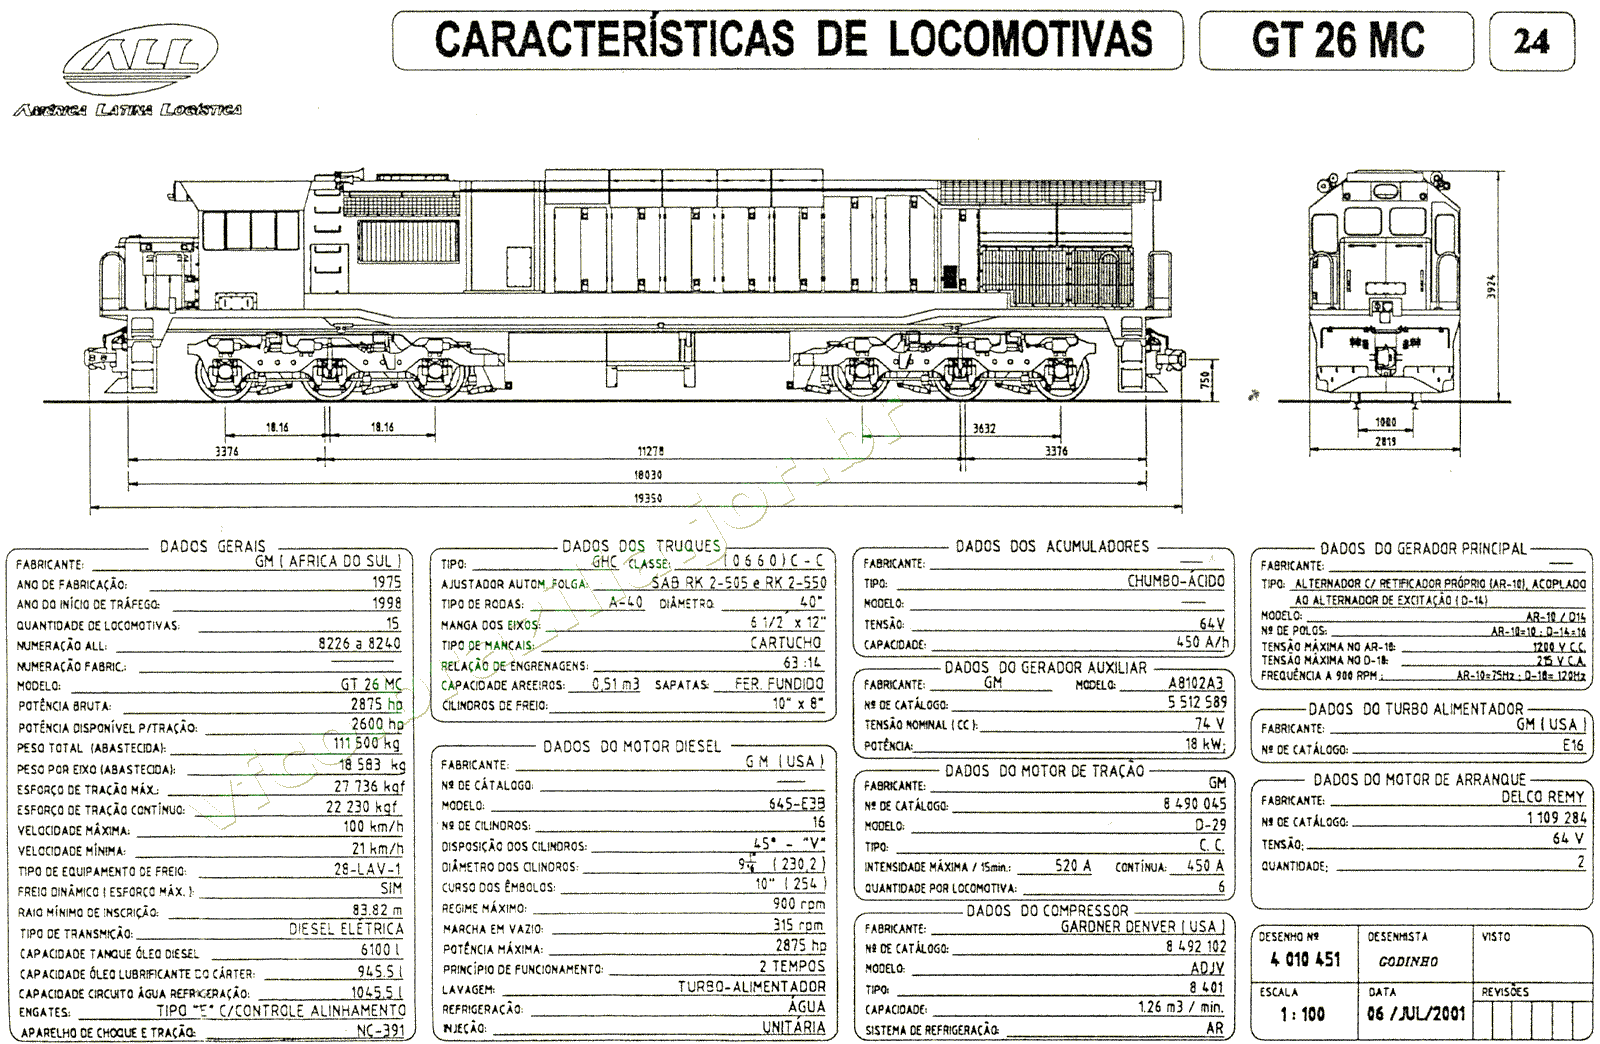 Desenho e características da Locomotiva GT26MC da ferrovia ALL